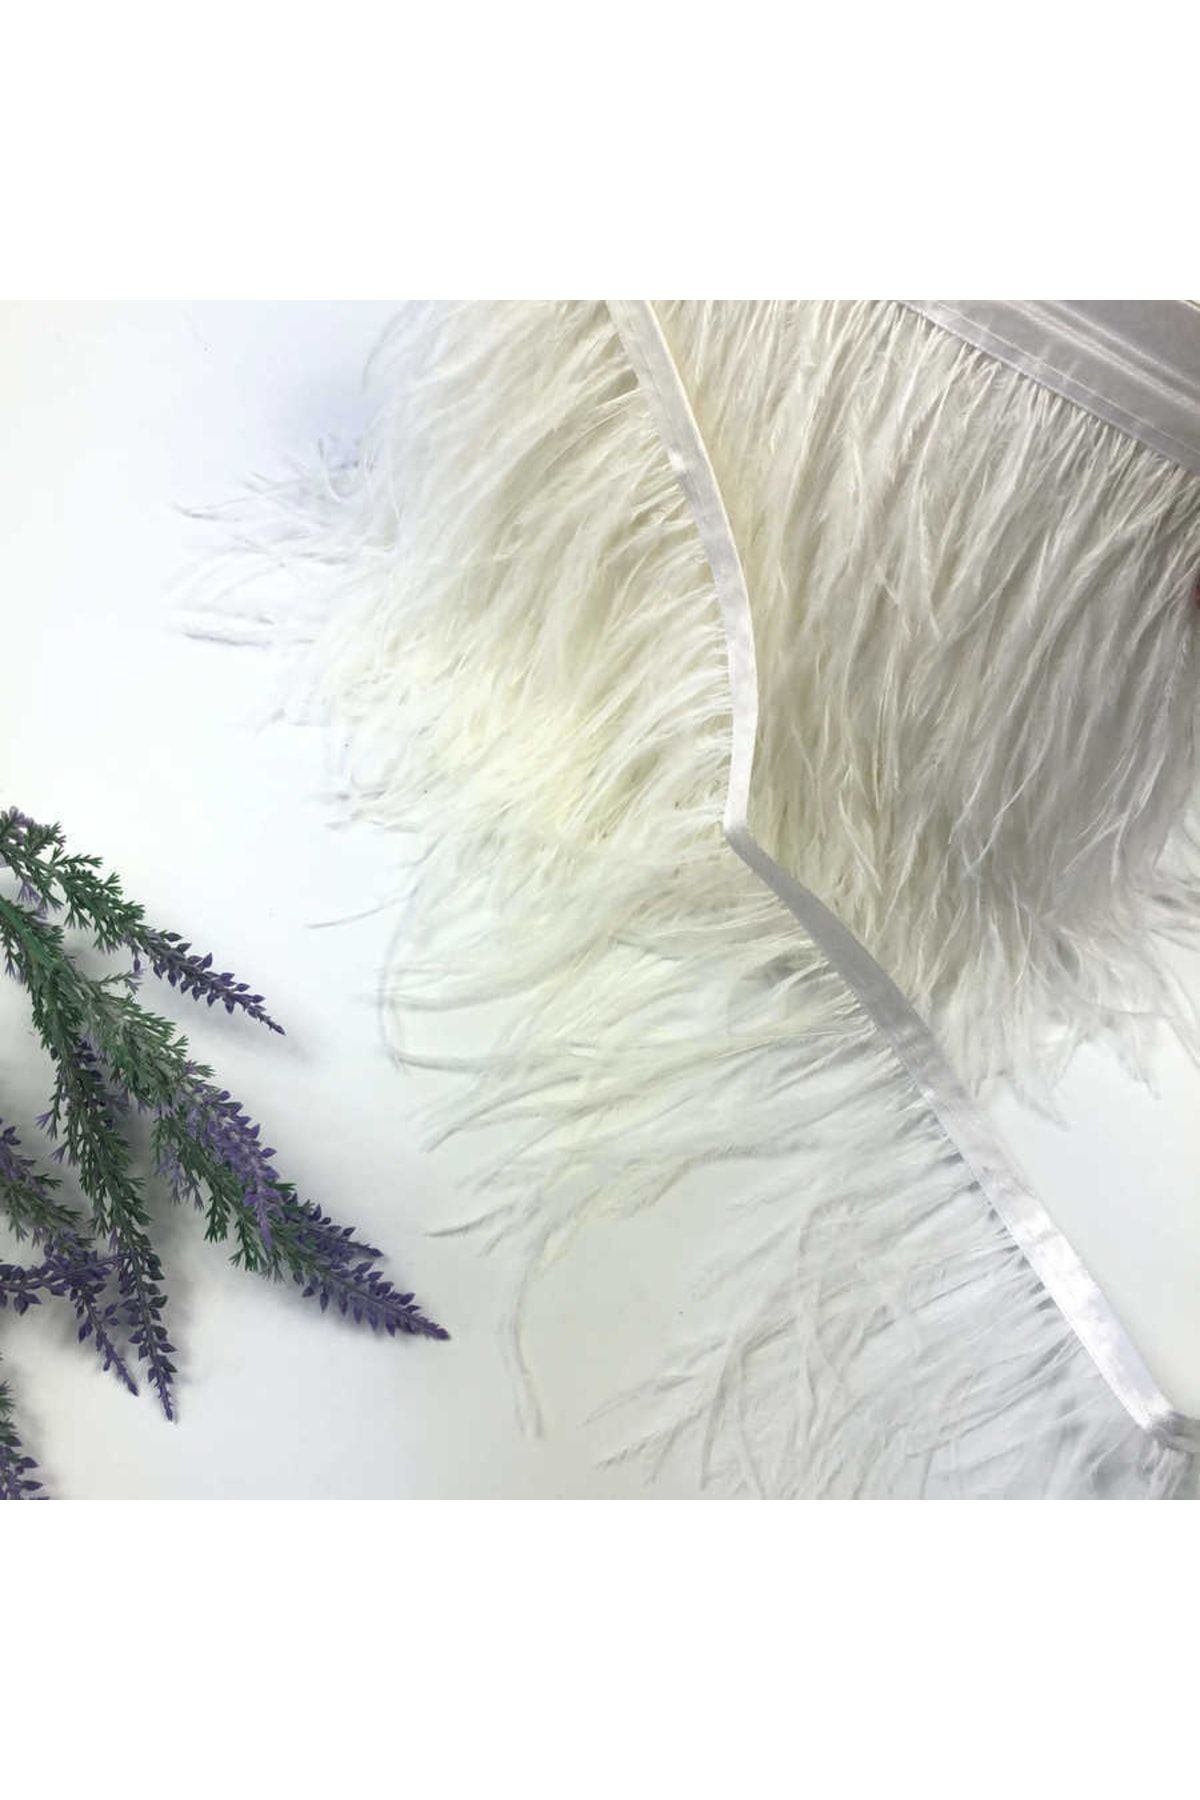 Aker Hediyelik Influencer Önerisi Beyaz Deve Kuşu Tüyü Şerit Halinde 30 cm